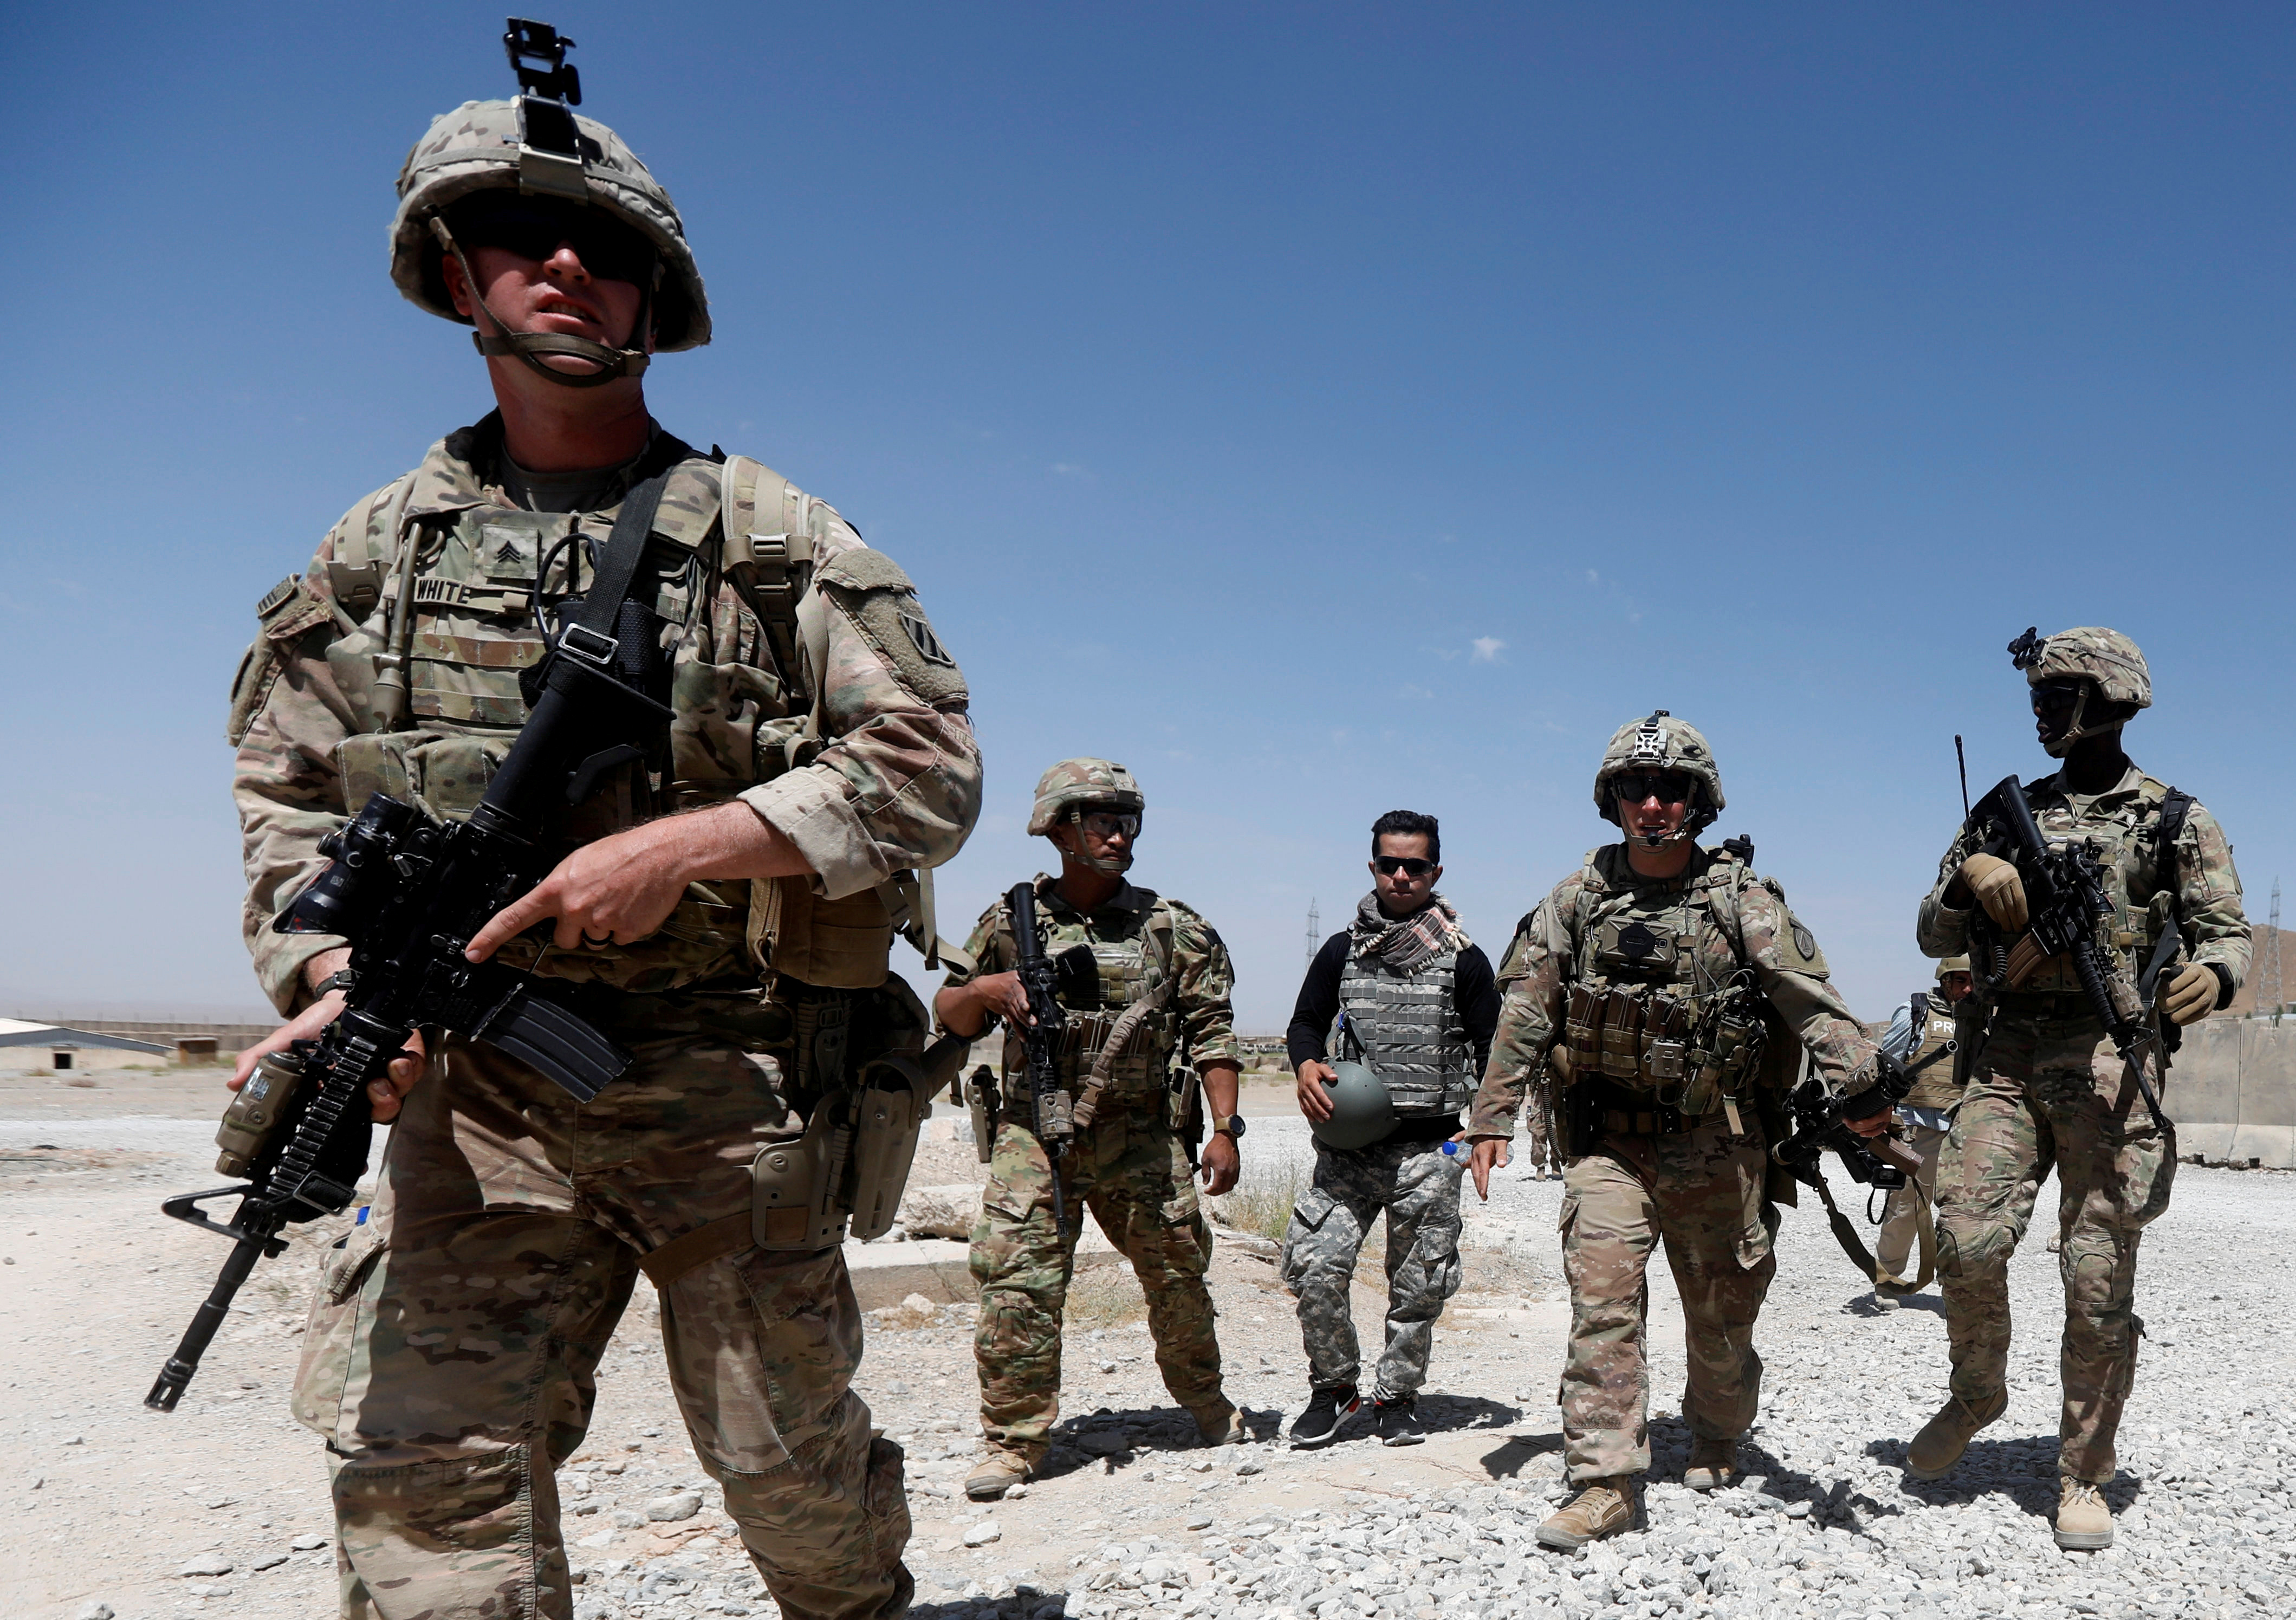 Видео военные американские. Американские войска в Афганистане. Войска США В Афганистане 2001. Американские военные в Афганистане. Американские солдаты в Афганистане.